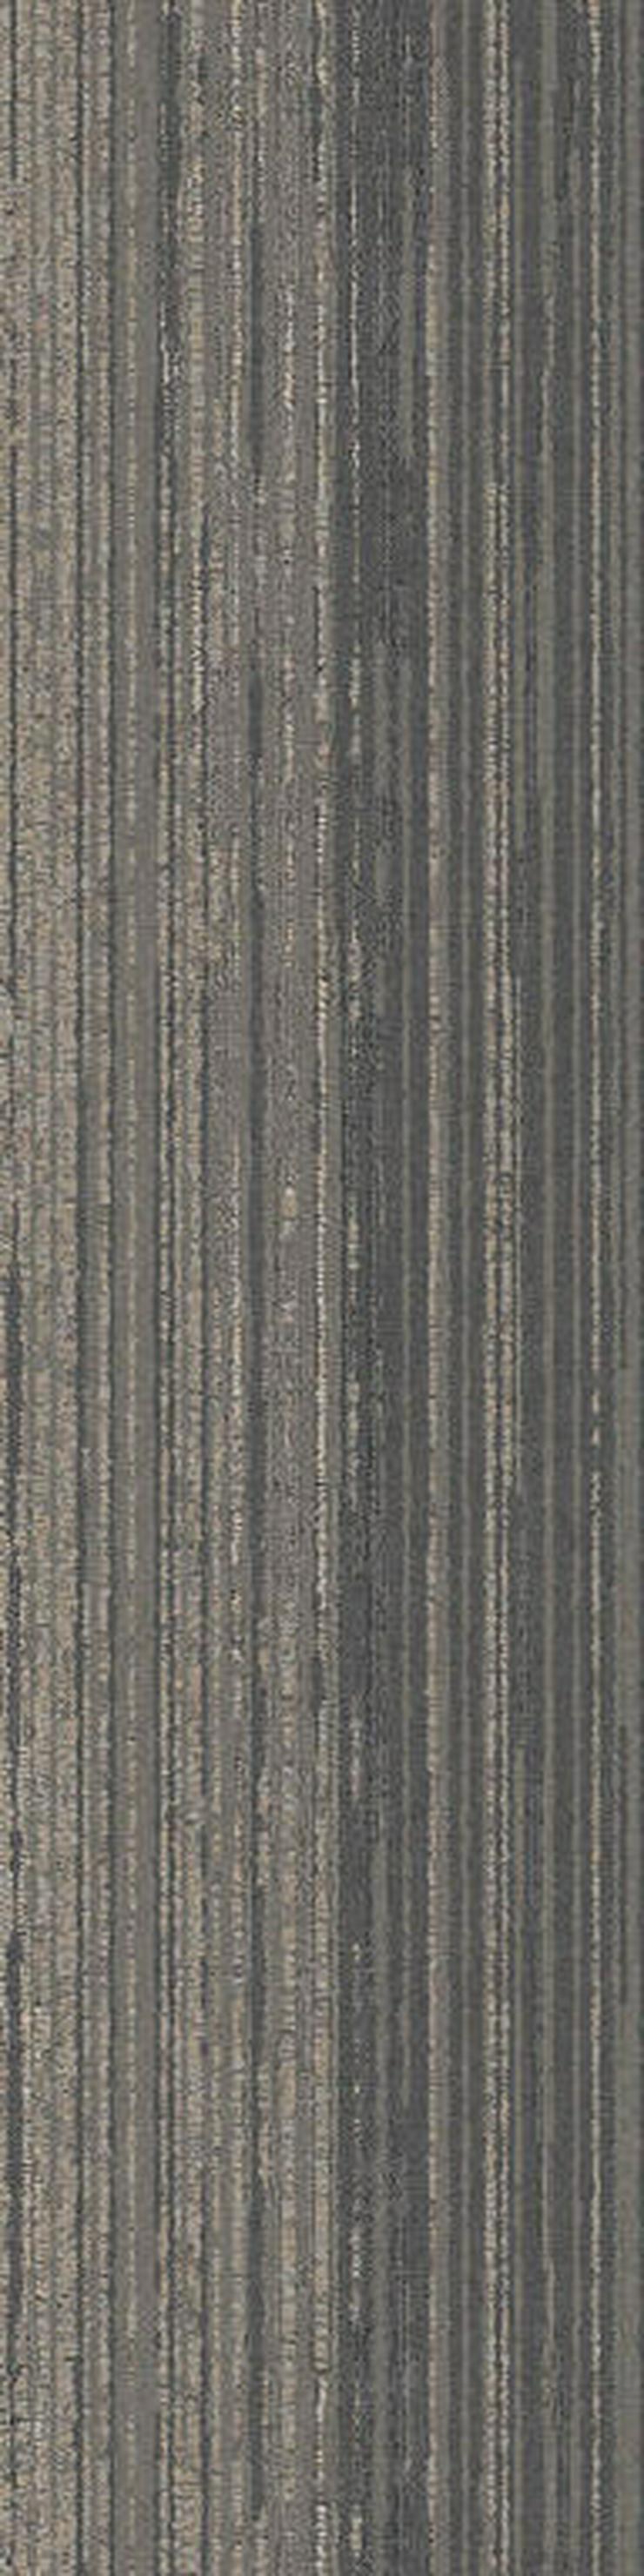 Bild 10: Schöne leichte 25X100cm Teppichfliesen. Auch in anderen Farben